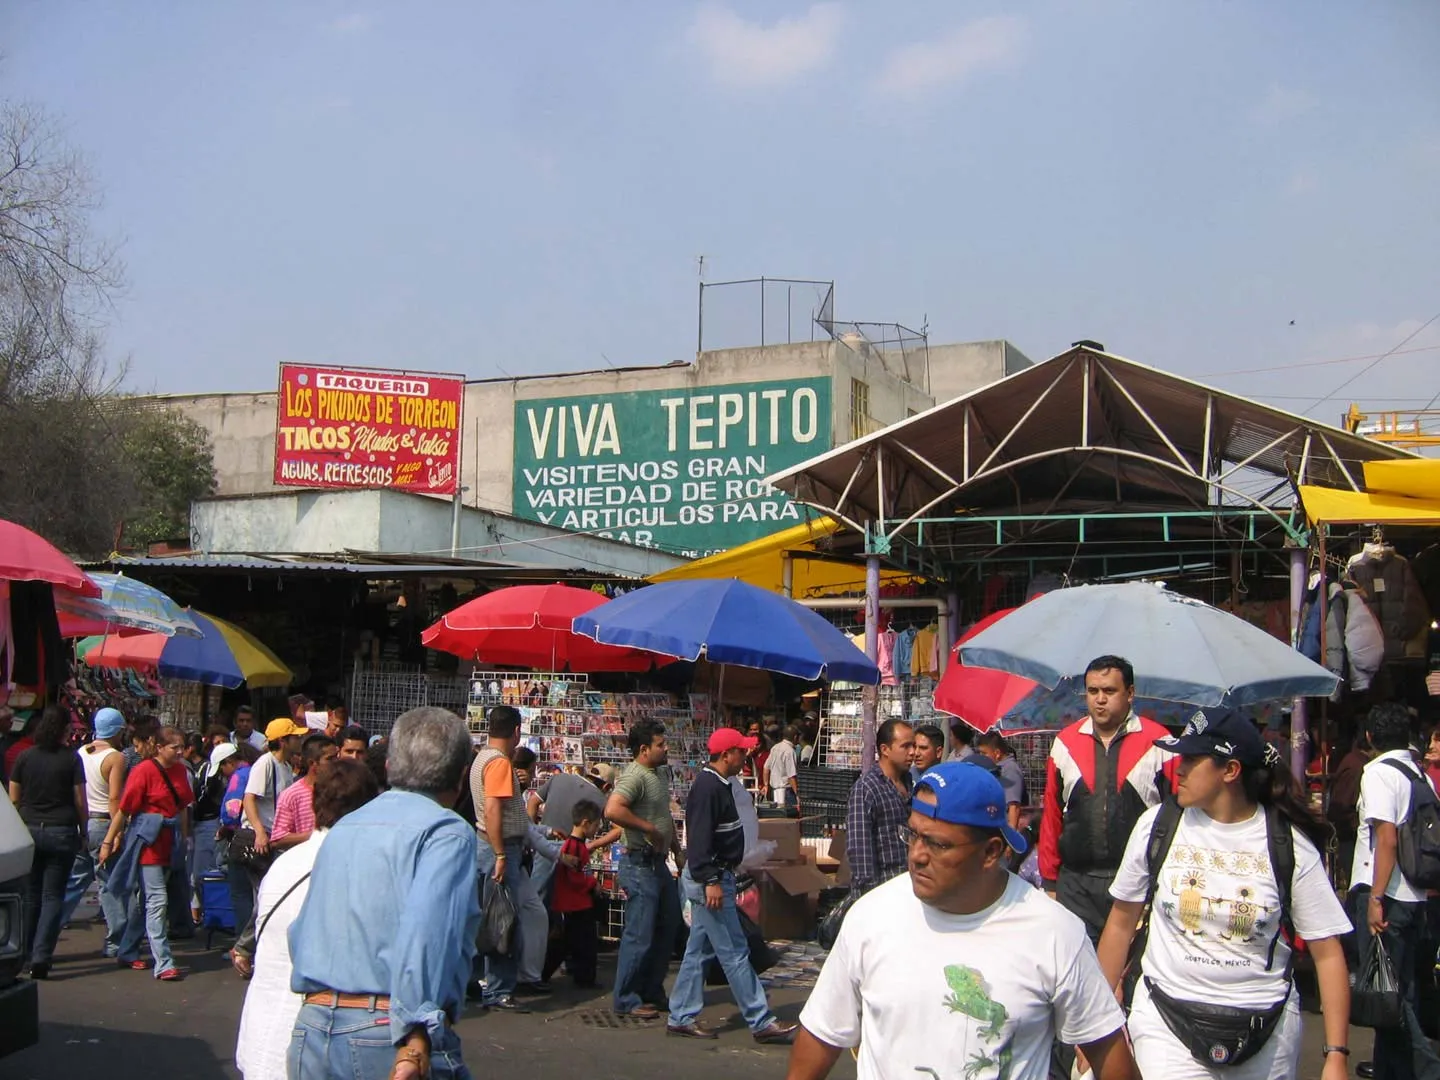 Nota sobre Consejos para visitar el famosos barrio de Tepito en la CDMX